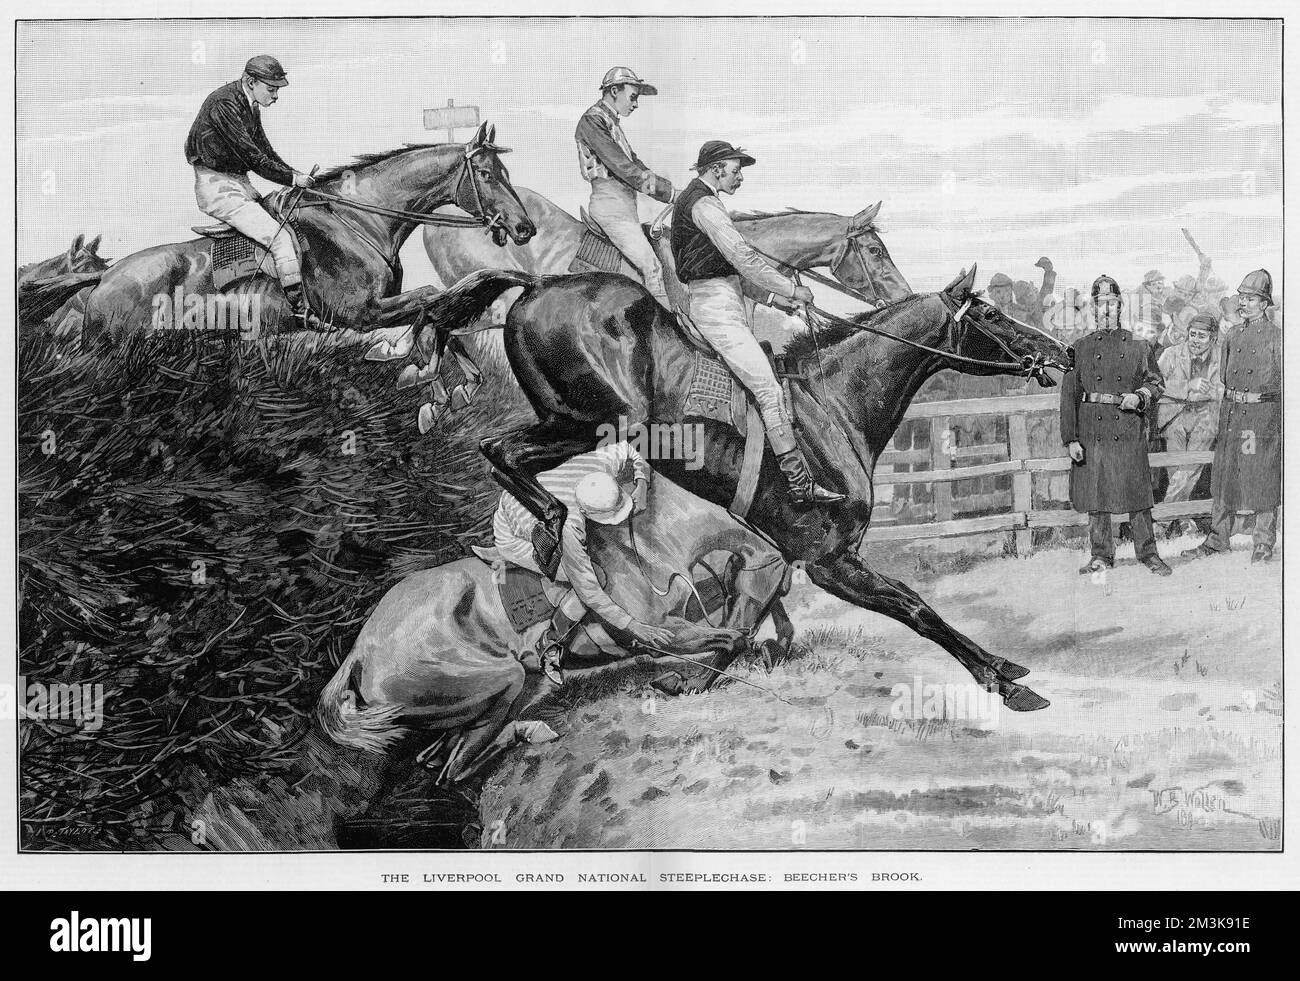 Un cavallo e il suo cavaliere prendono un pancino al famigerato Beecher's Brook sul corso Grand National di Aintree. Data: 29 marzo 1890 Foto Stock